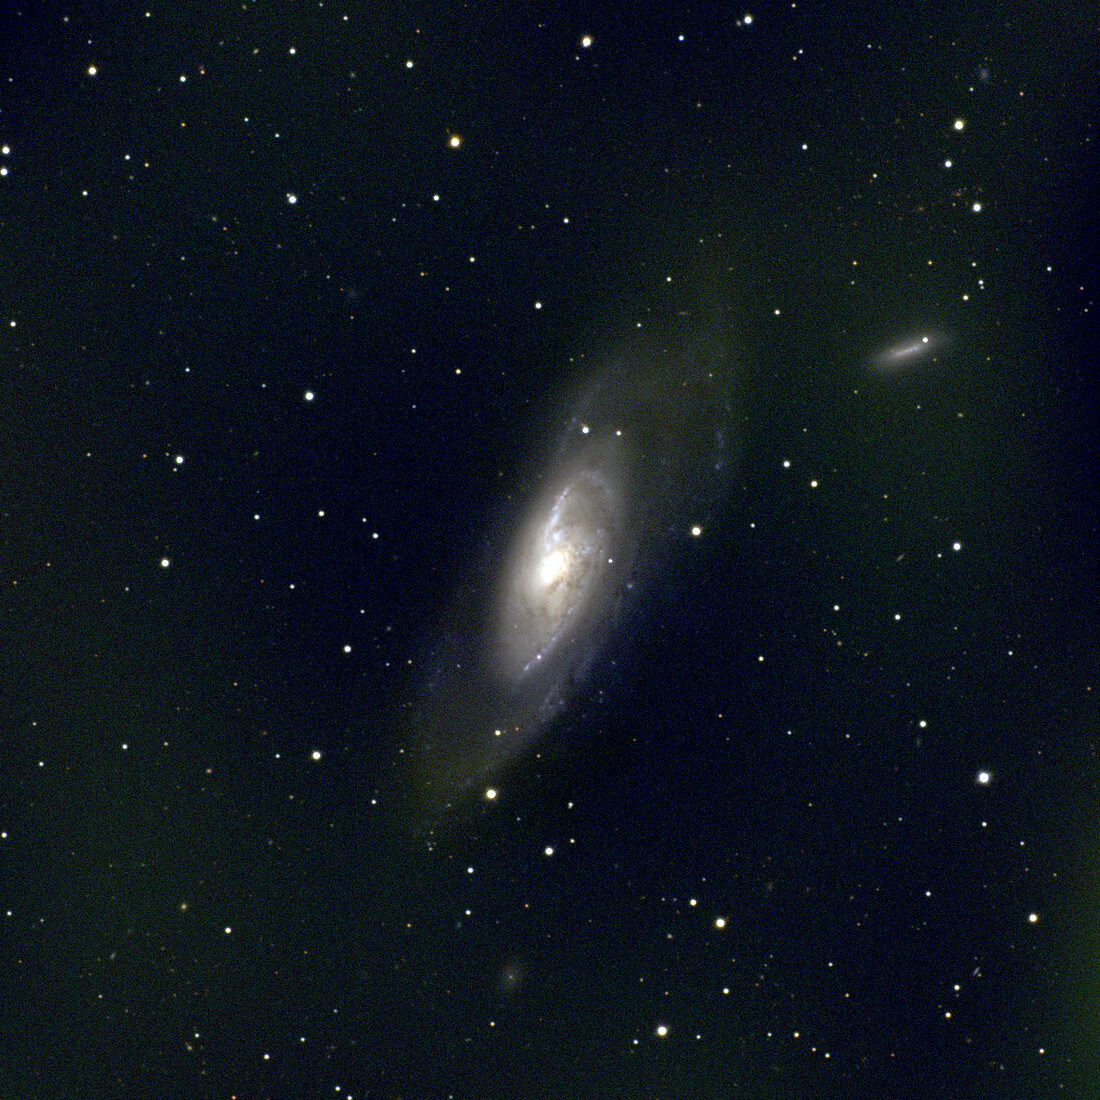 Spiral Galaxy M106, NGC 4258